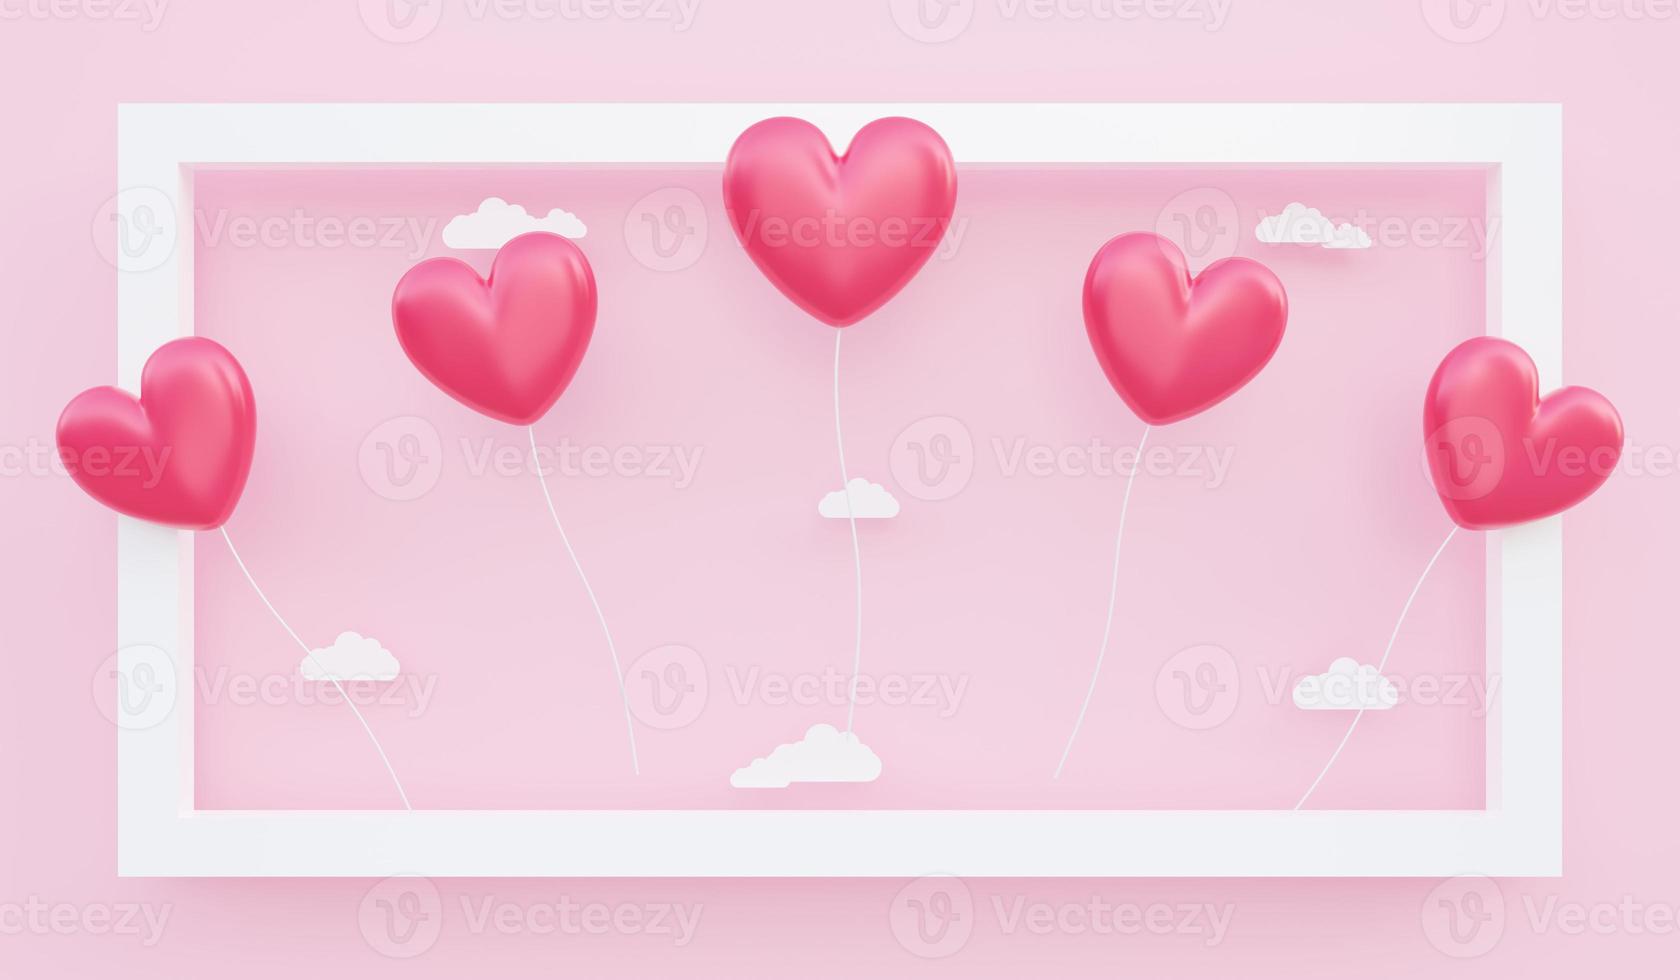 giorno di san valentino, sfondo del concetto di amore, illustrazione 3d di palloncini a forma di cuore rosso che galleggiano fuori dalla cornice foto